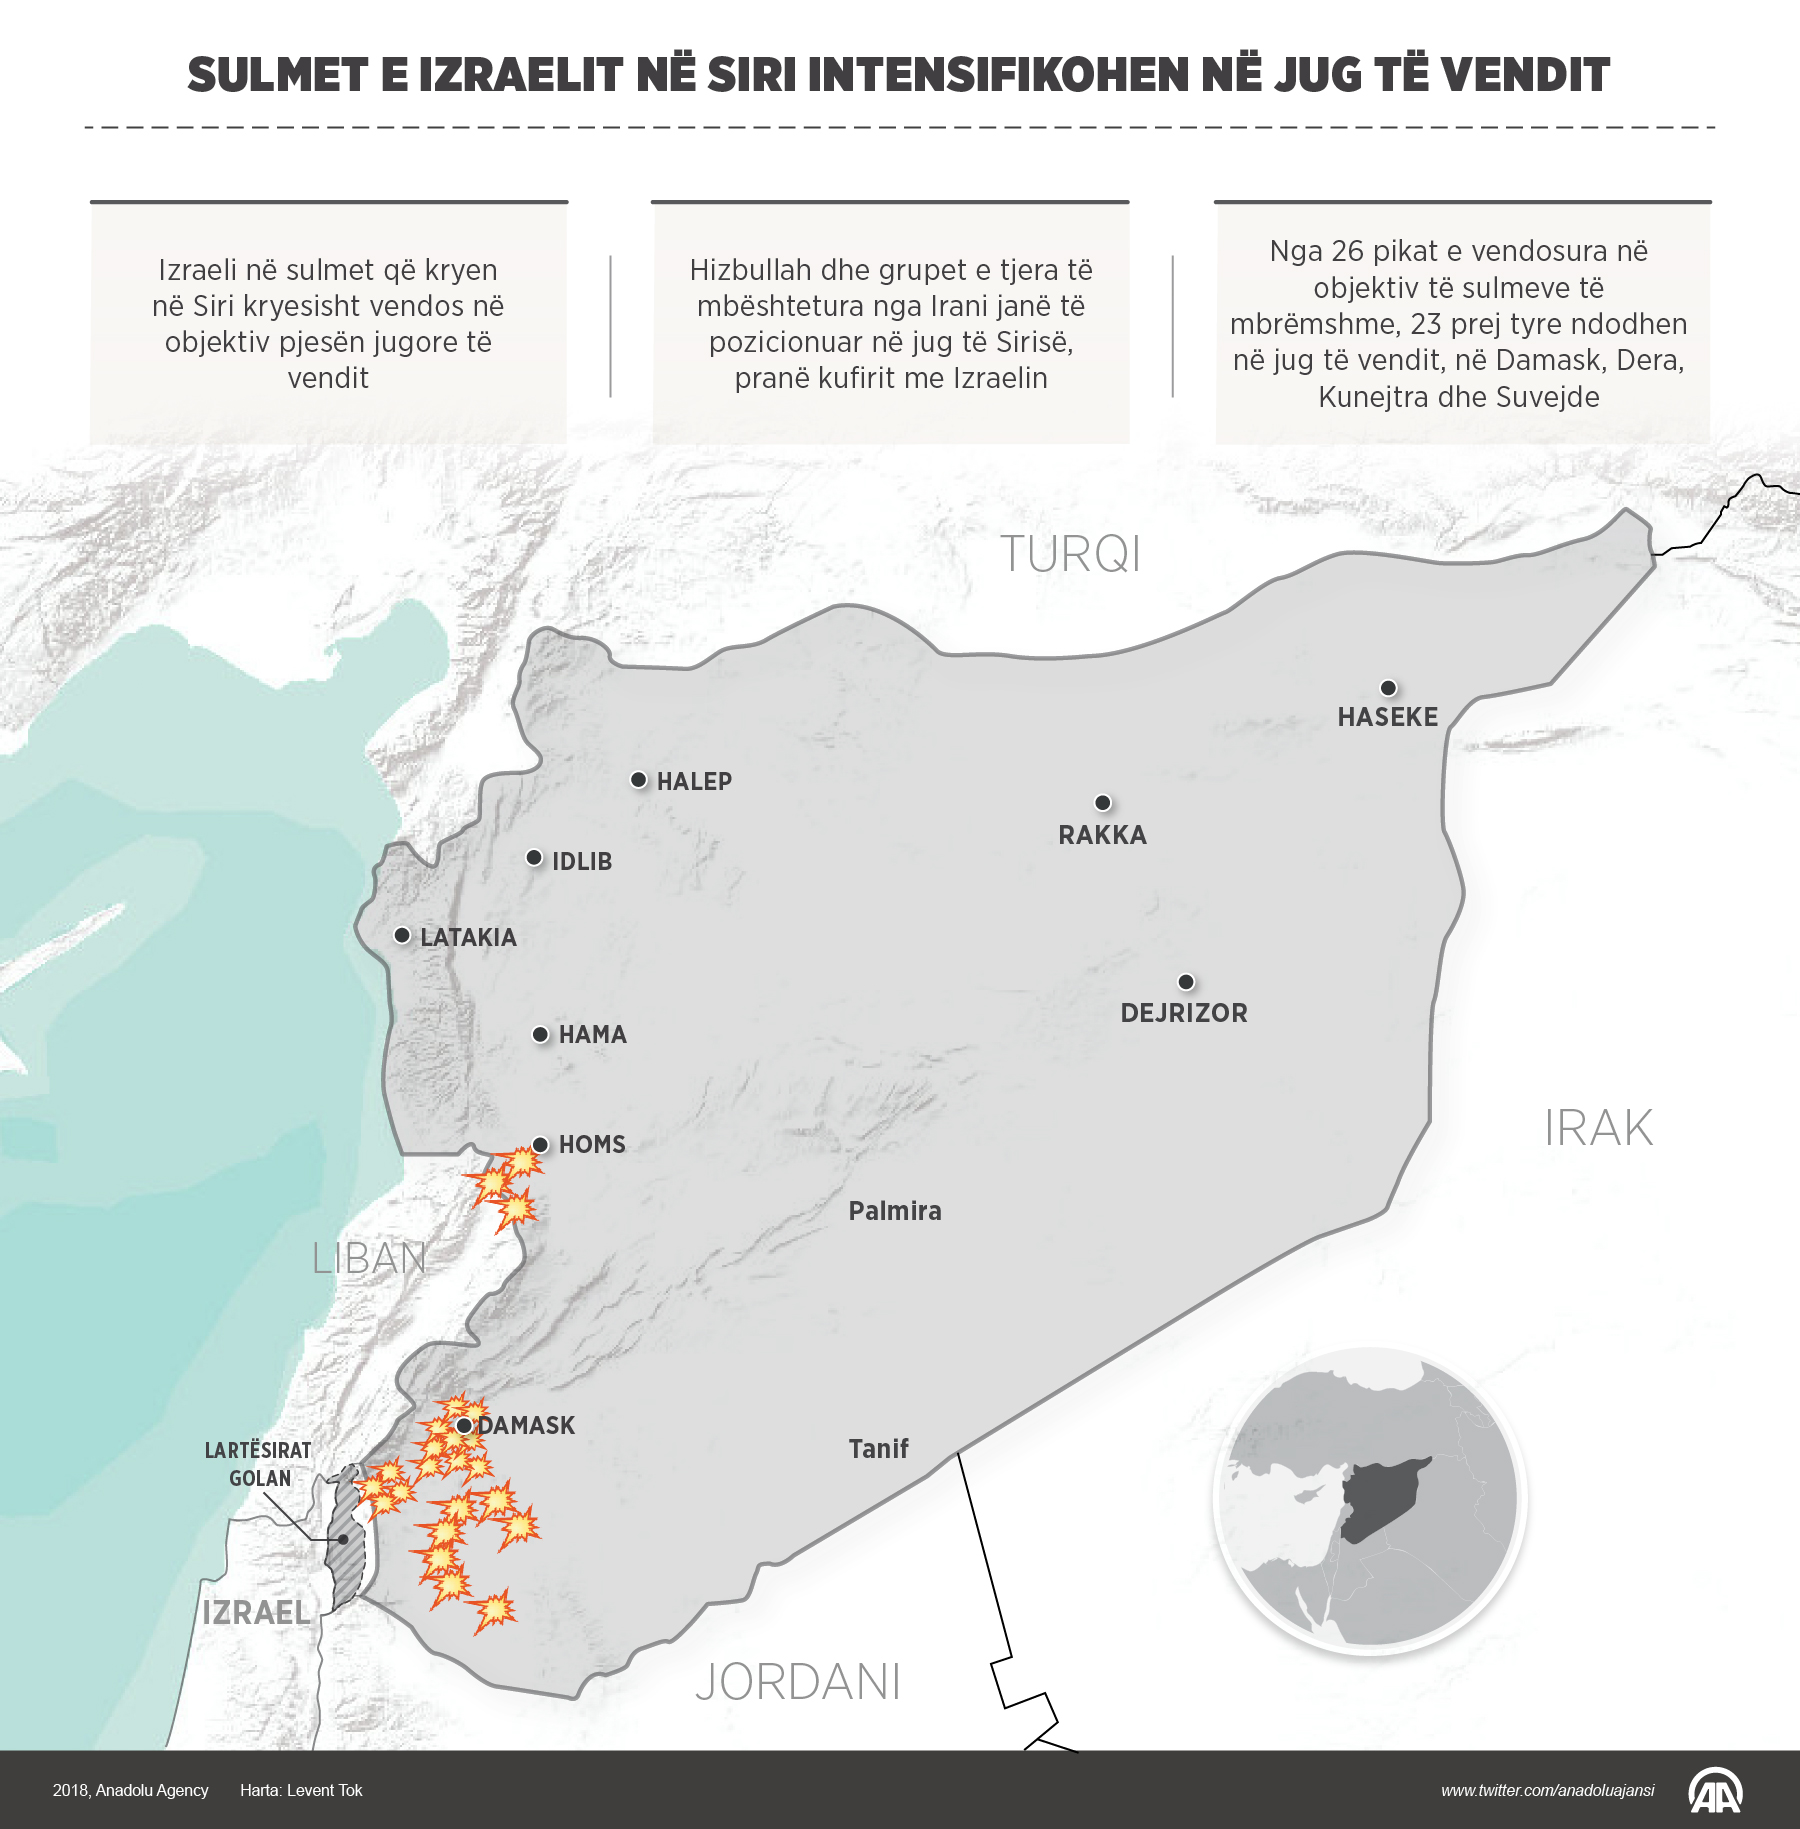 Sulmet e Izraelit në Siri intensifikohen në jug të vendit